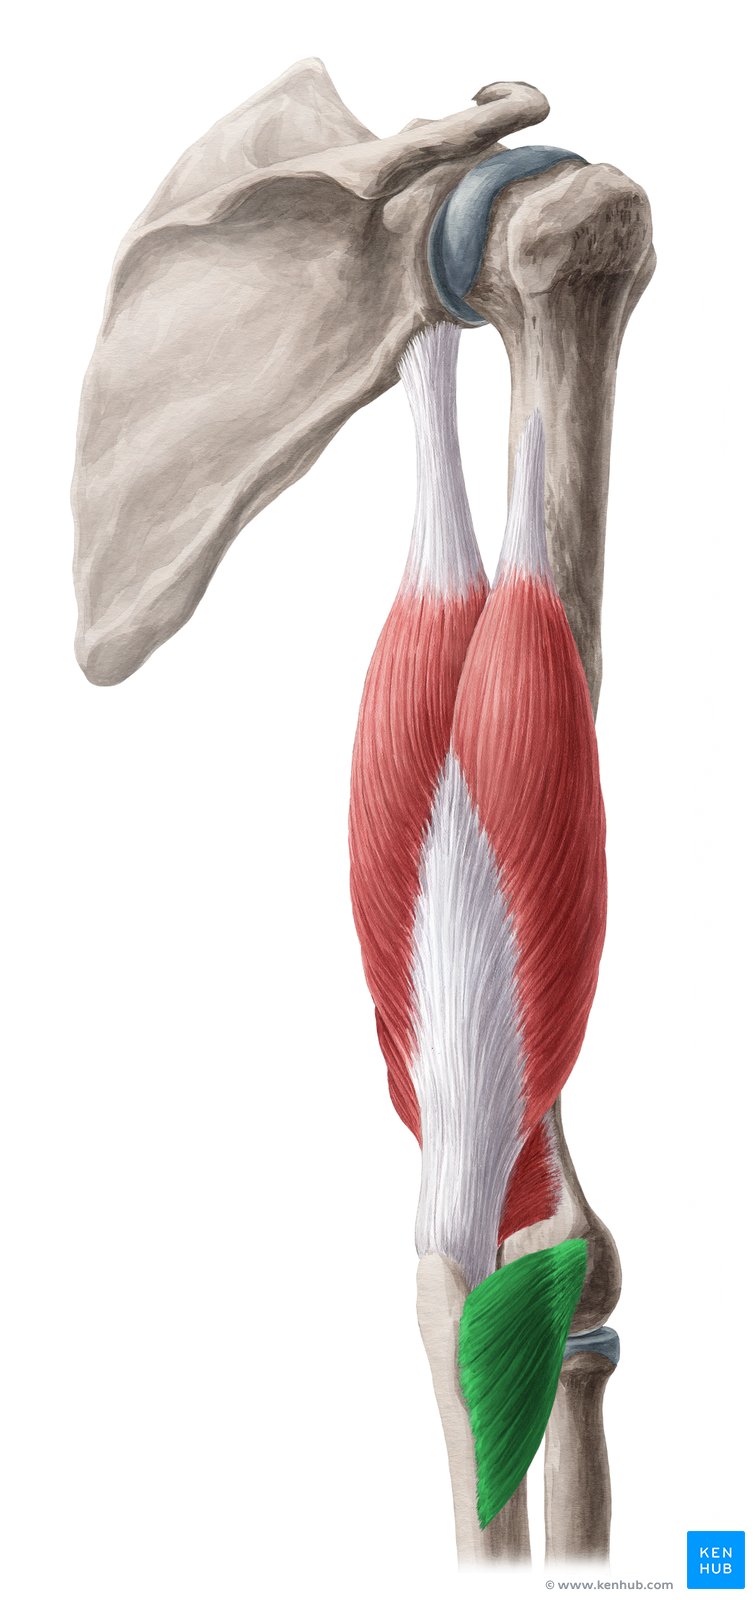 Músculo Ancôneo: Origem, inserção, inervação e ação | Kenhub diagram of the meninges 